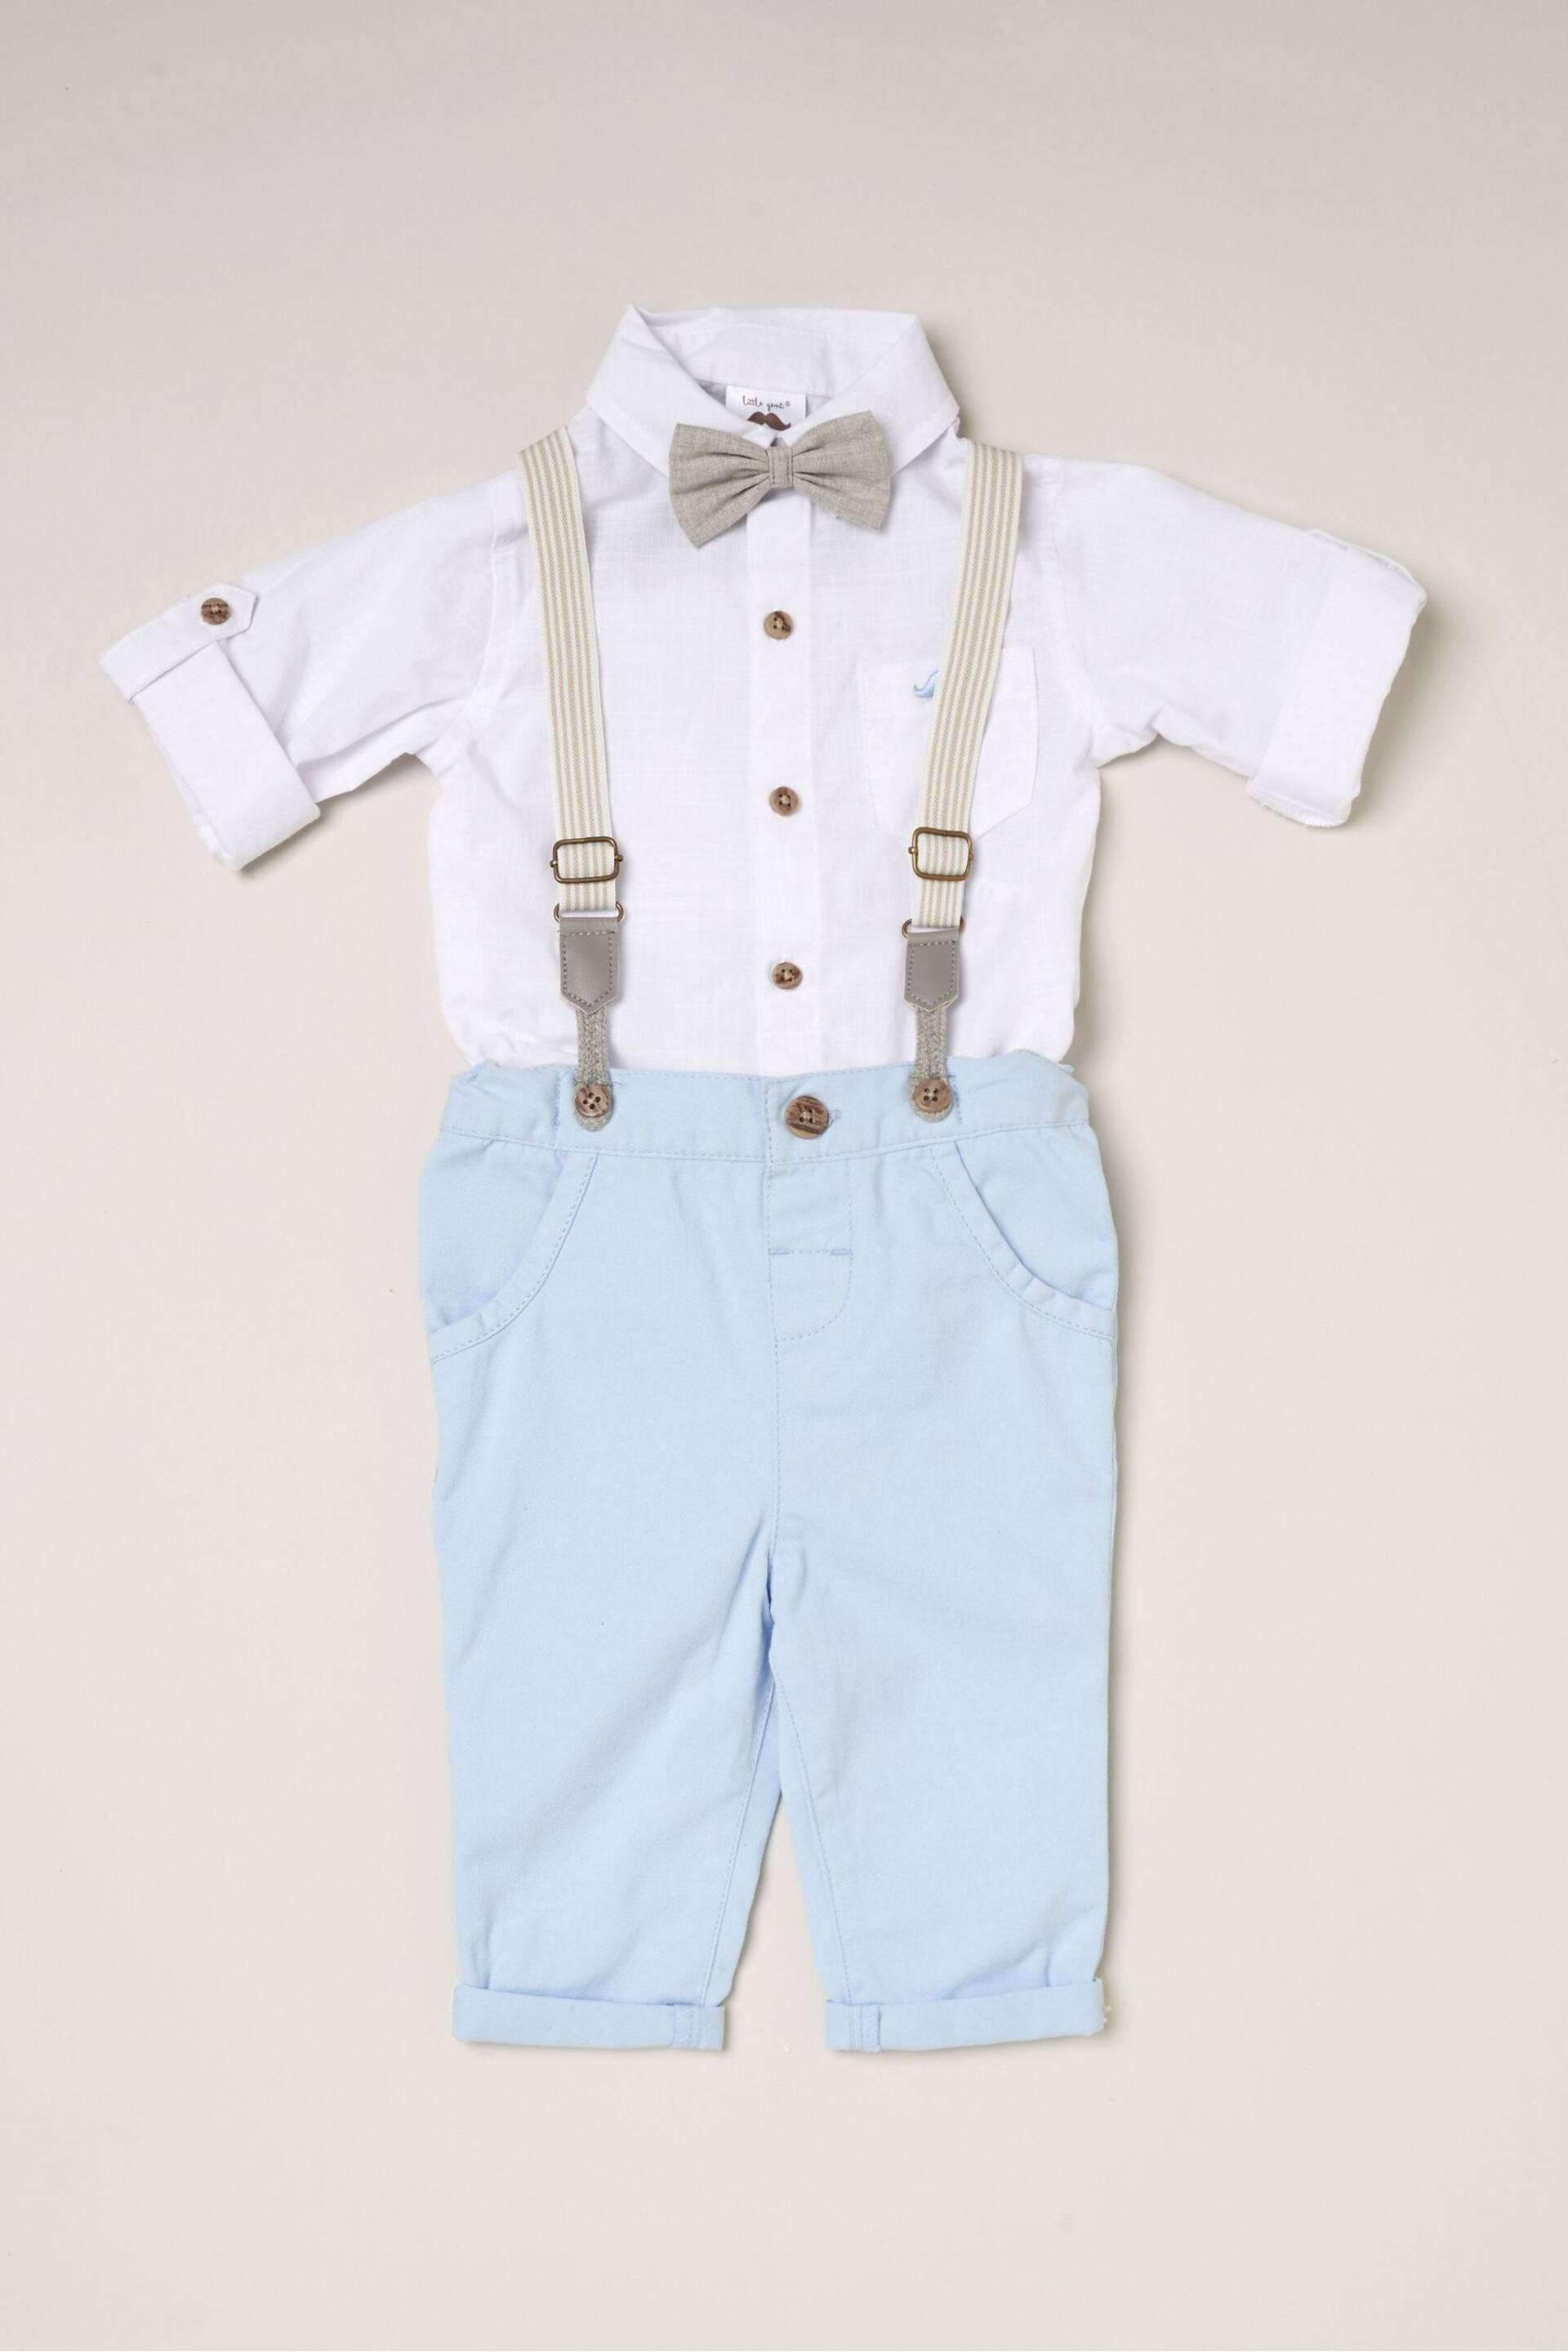 Little Gent Blue Shirt Bodysuit Bowtie Loop Brace & Trousers Outfit Set - Image 1 of 4